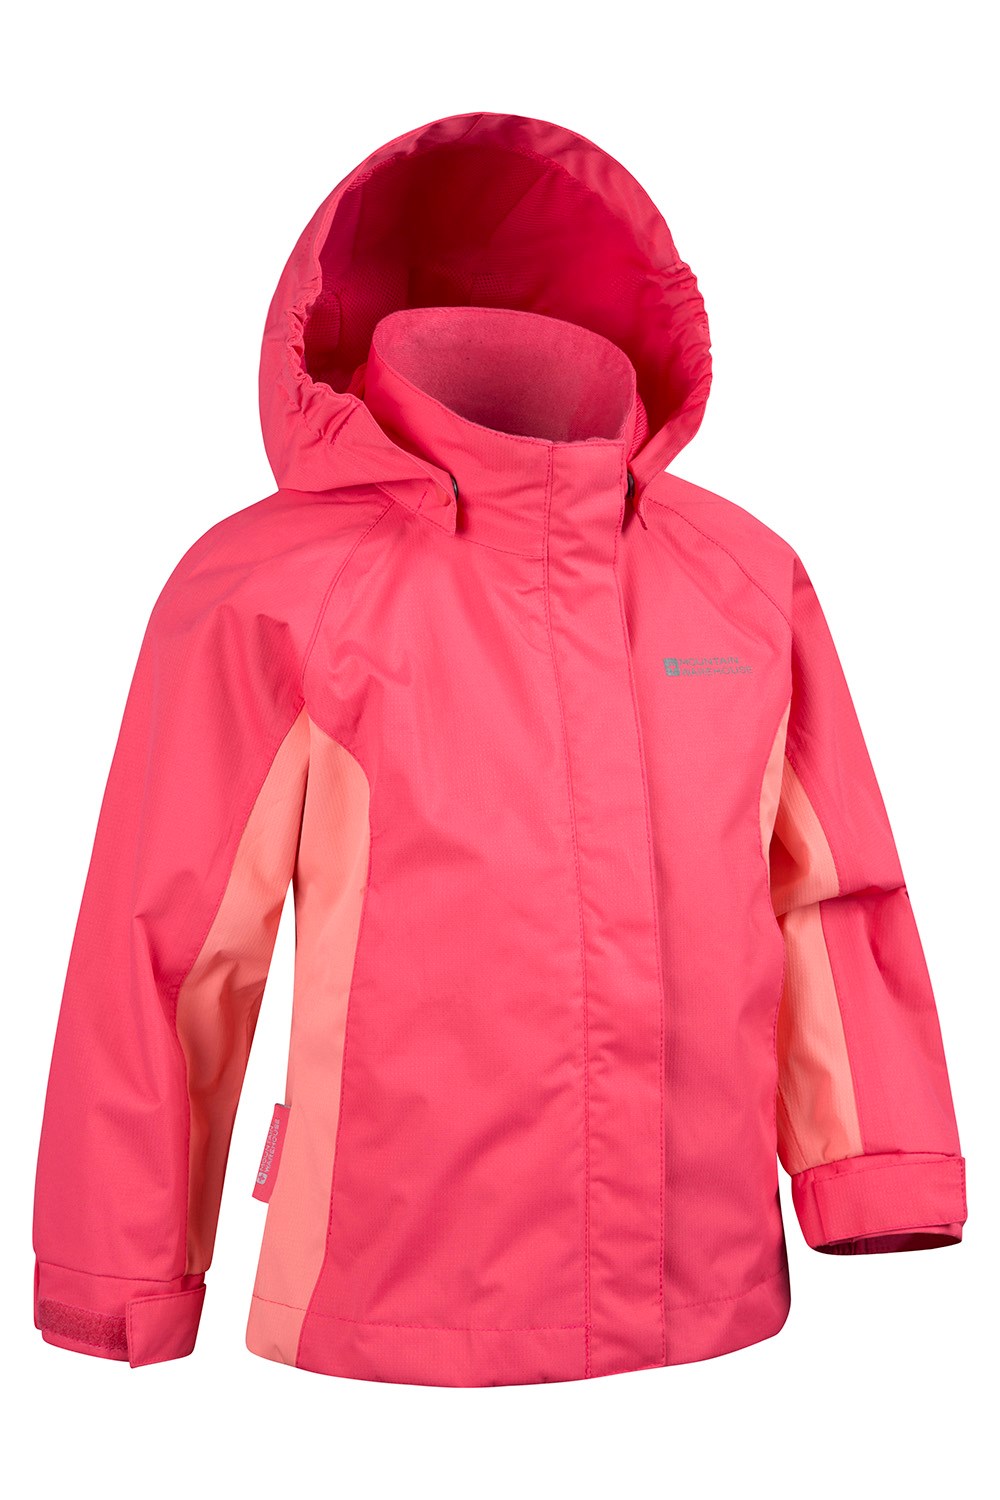 Shelly Kids Waterproof Jacket | Mountain Warehouse GB